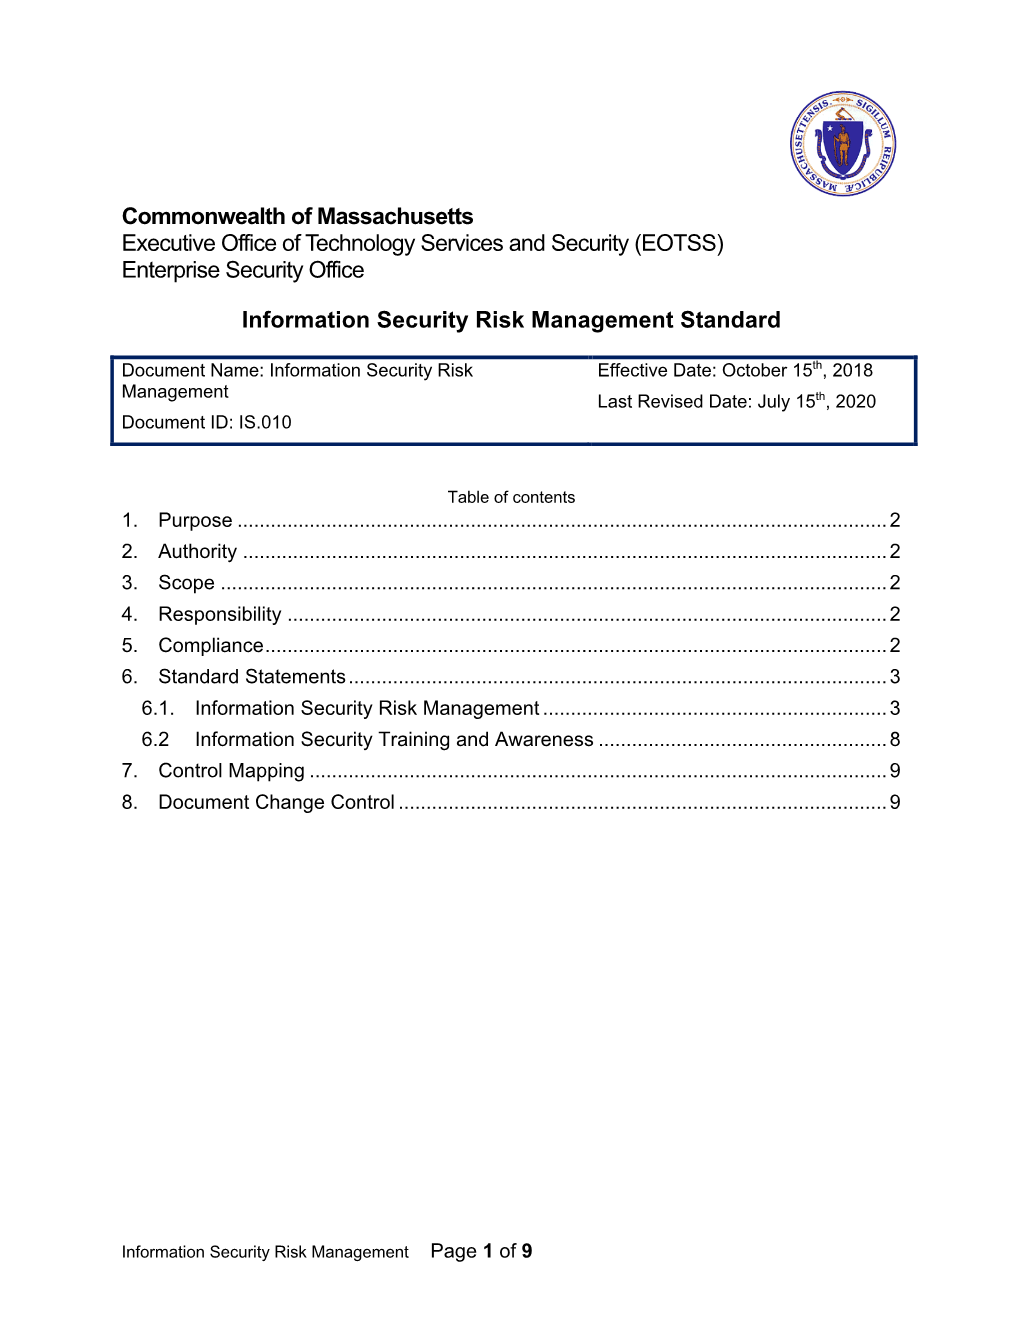 IS.010-Sdr-Information Security Risk Management